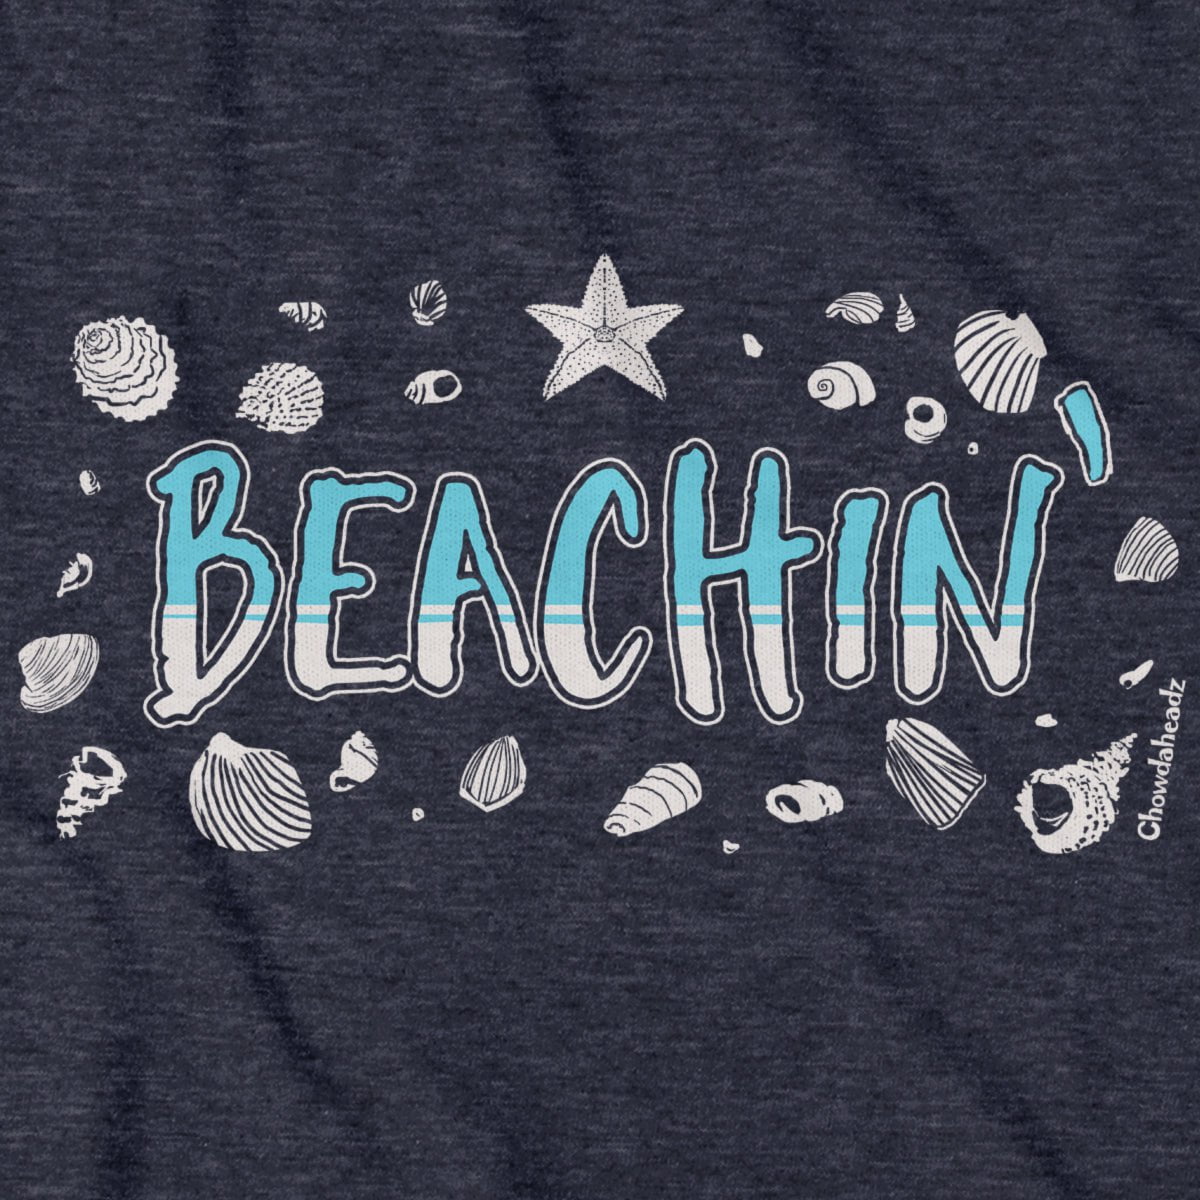 Beachin' T-Shirt - Chowdaheadz